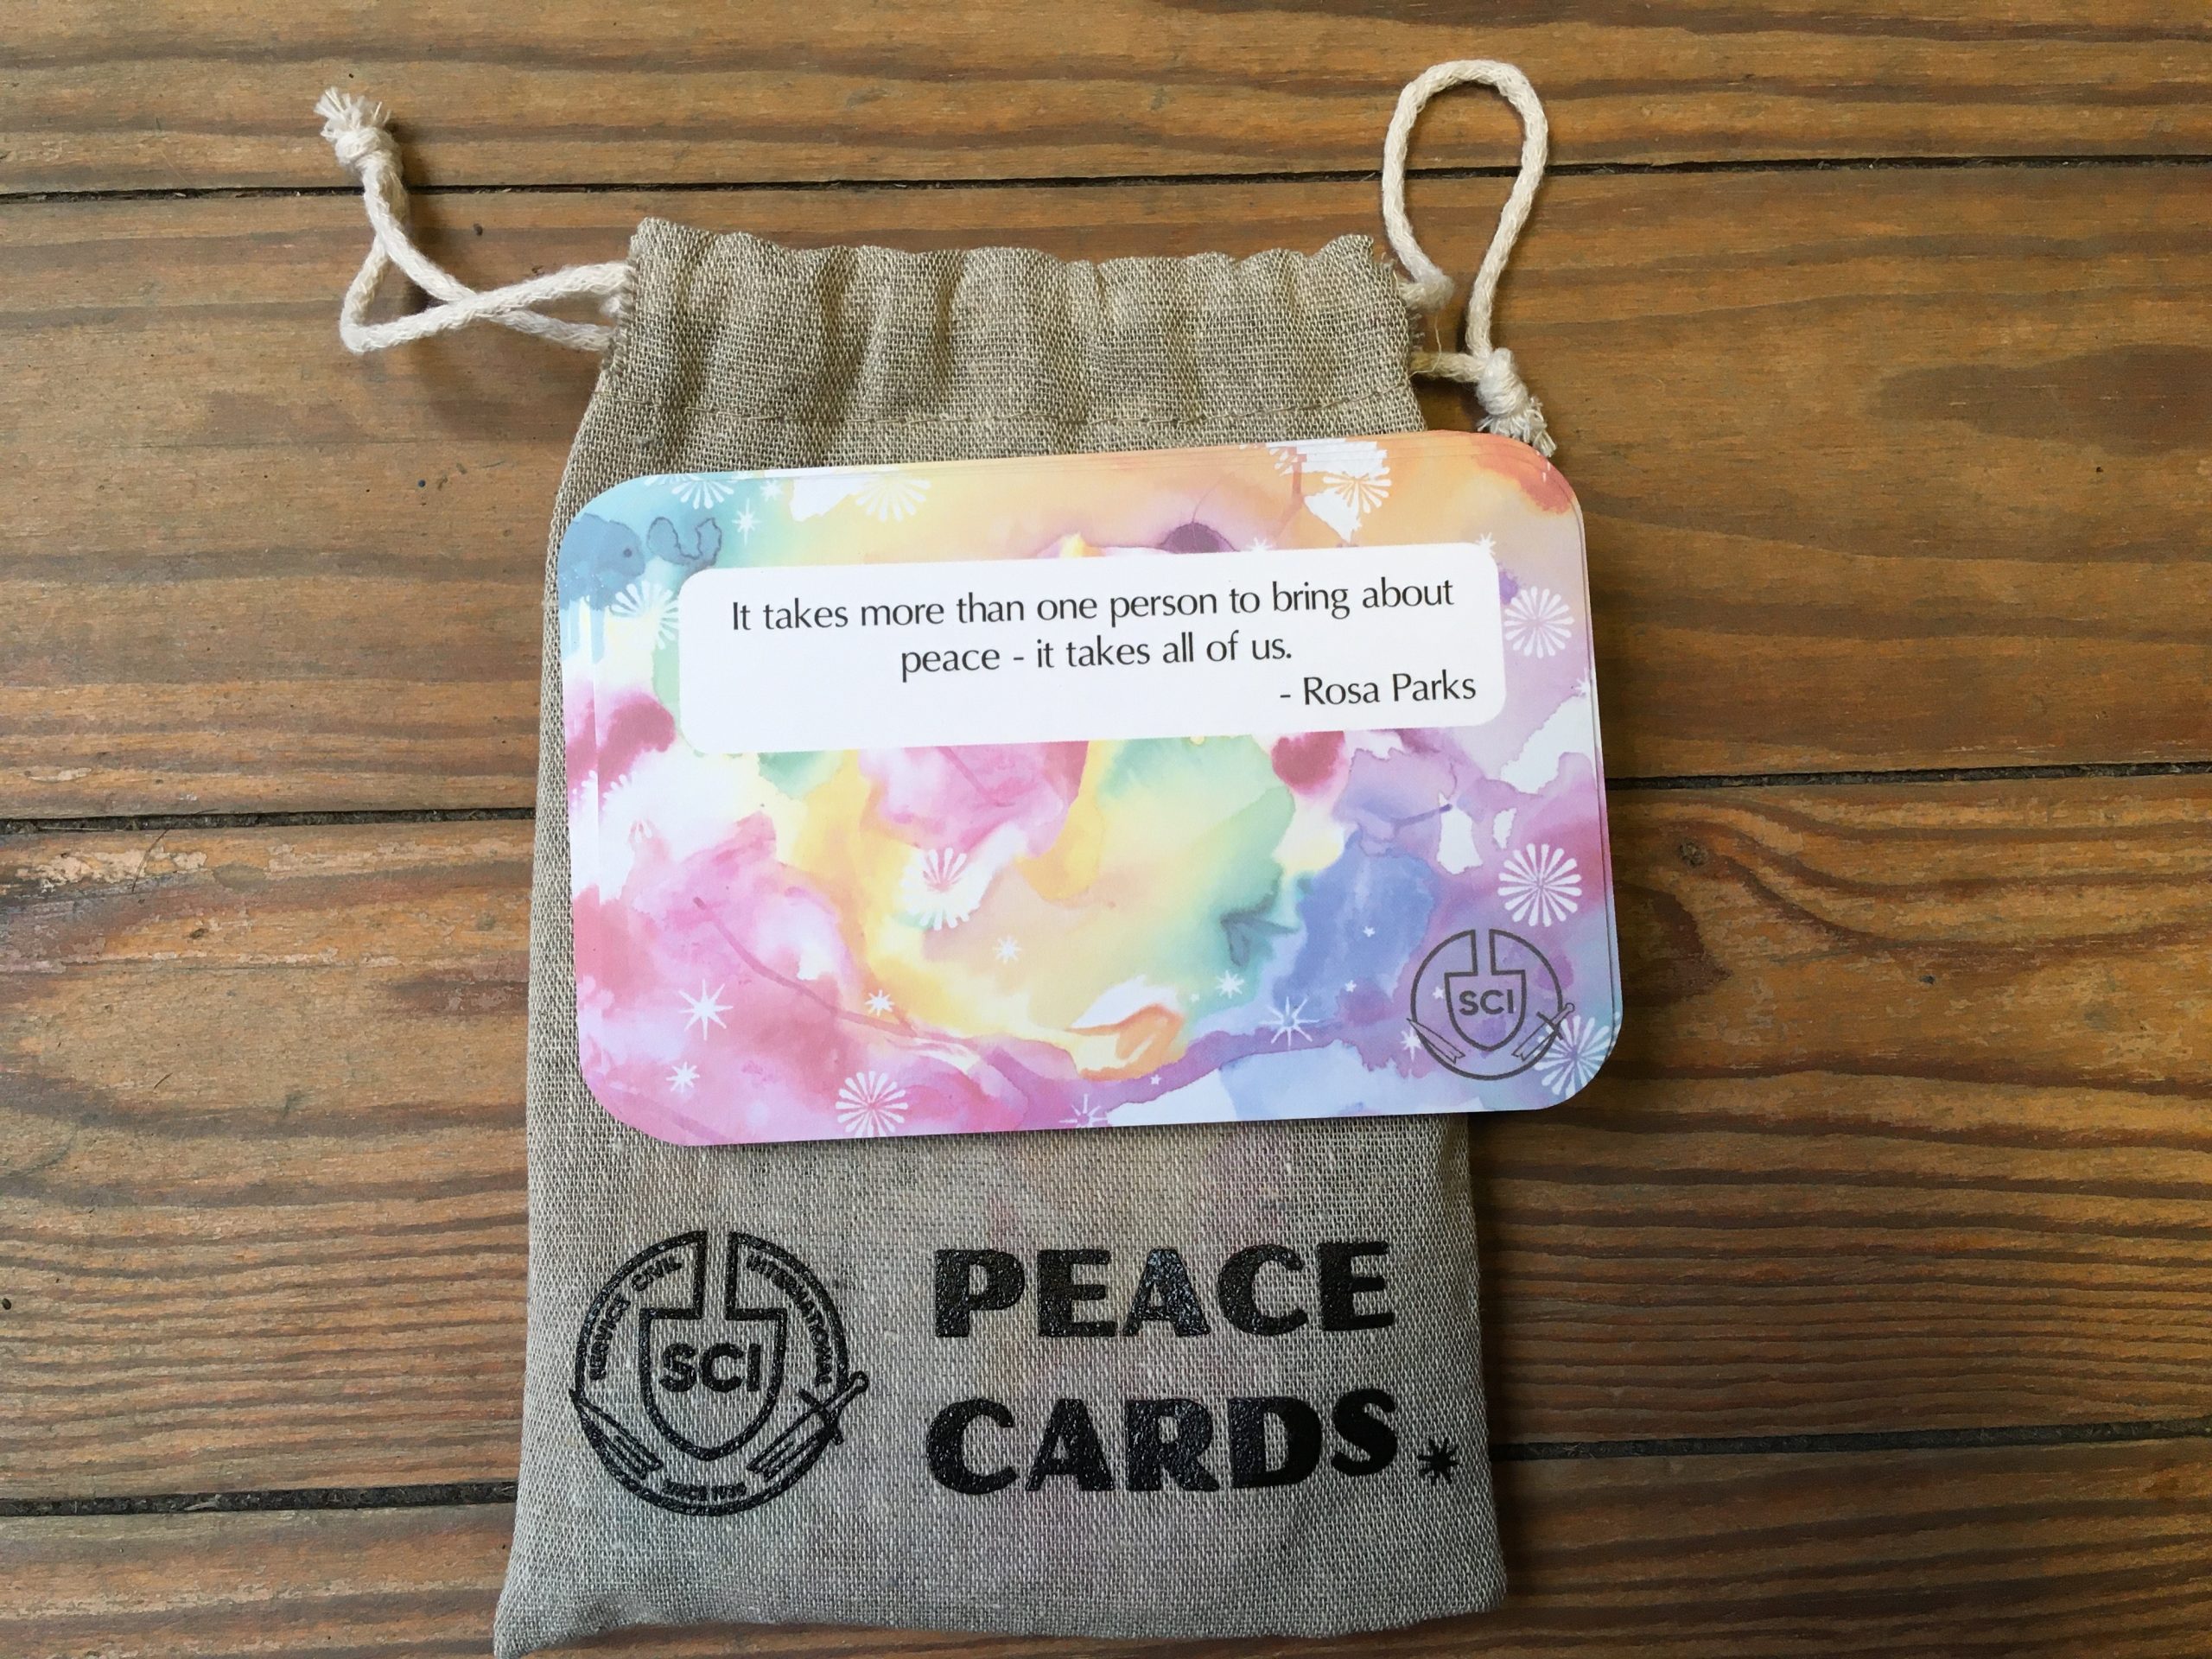 Peace cards